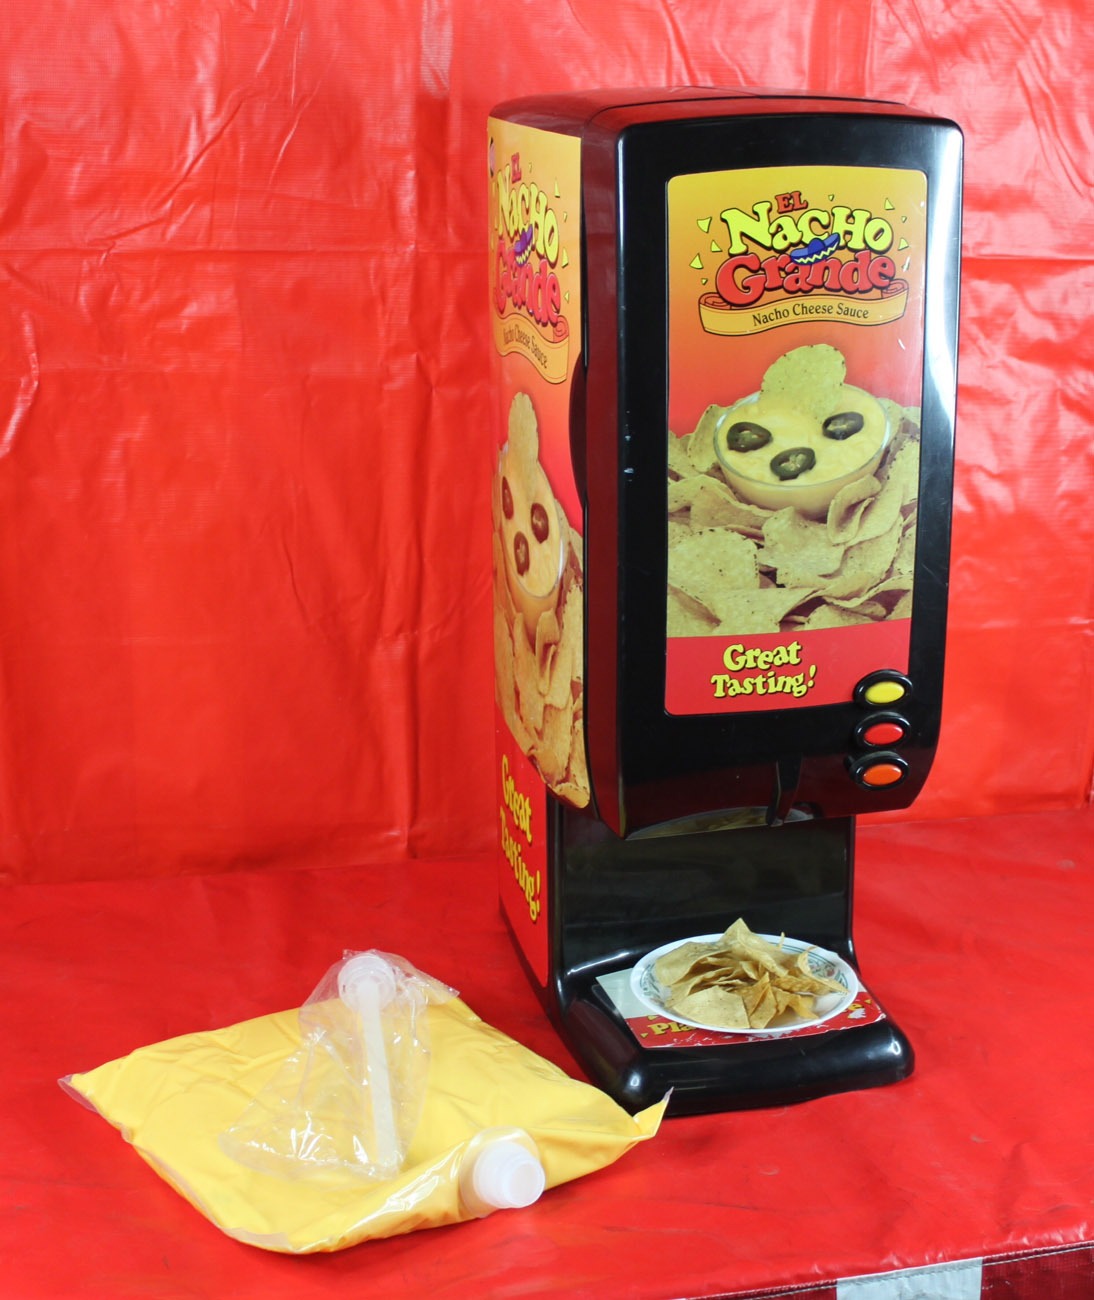 Nacho Machine, Melted Cheese Dispenser